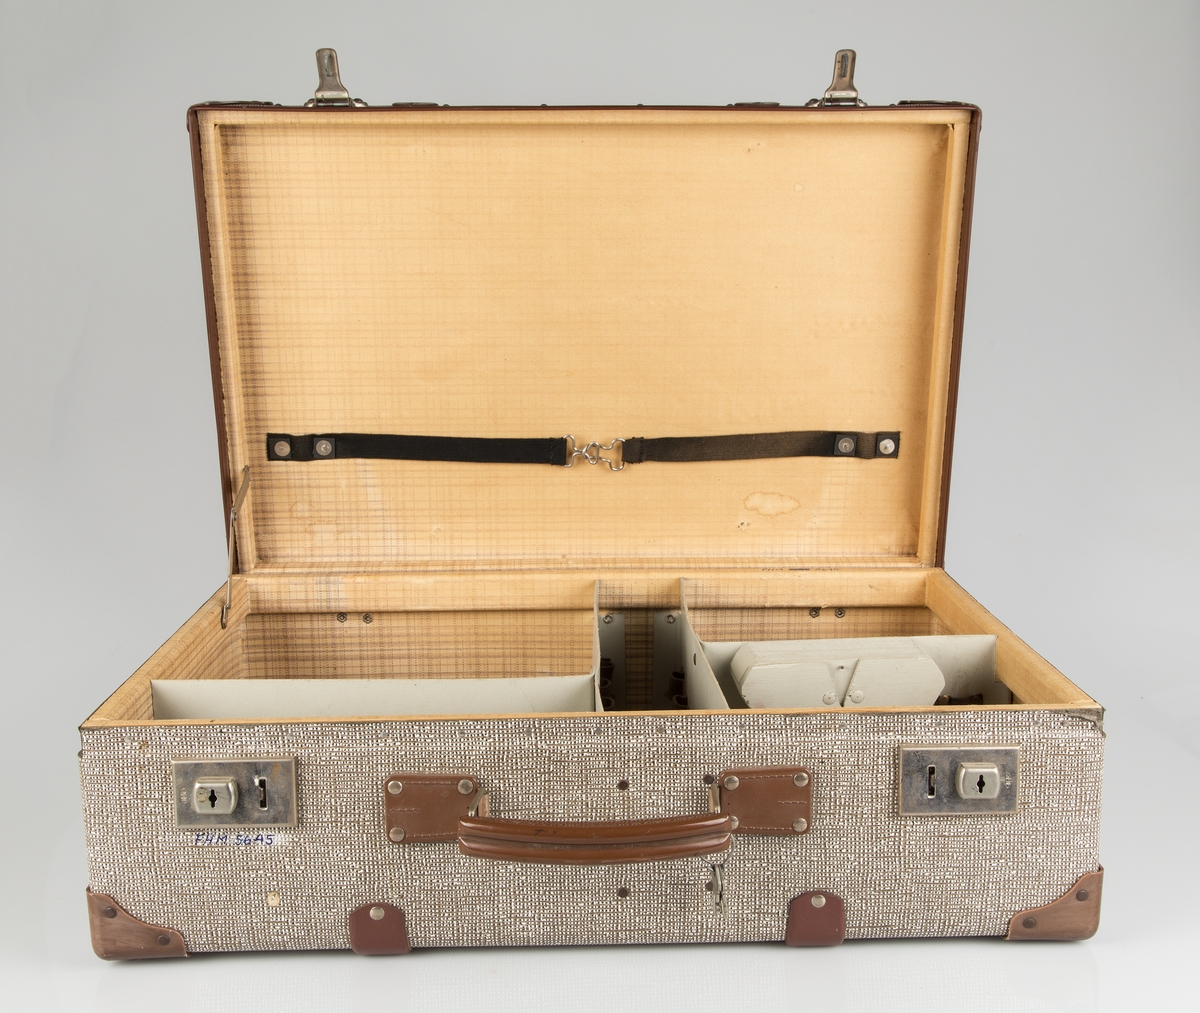 Filmkoffert. Til oppbevaring og transport av film. 5 innvendige rom, trukket med papir innvendig. To låsebeslag, håndtak.